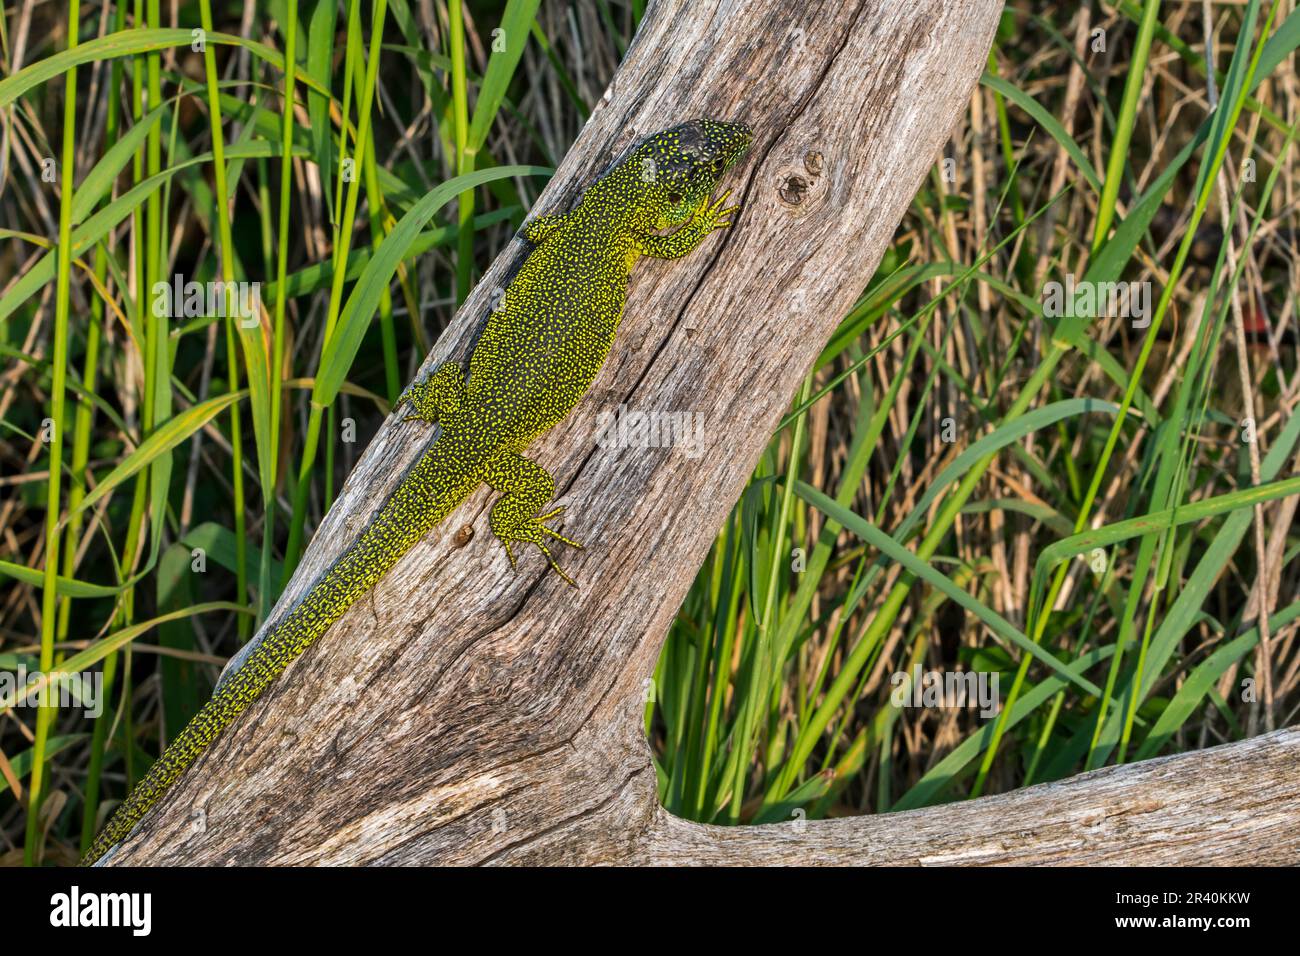 Western green lizard (Lacerta bilineata / Lacerta viridis) sunning on tree trunk Stock Photo